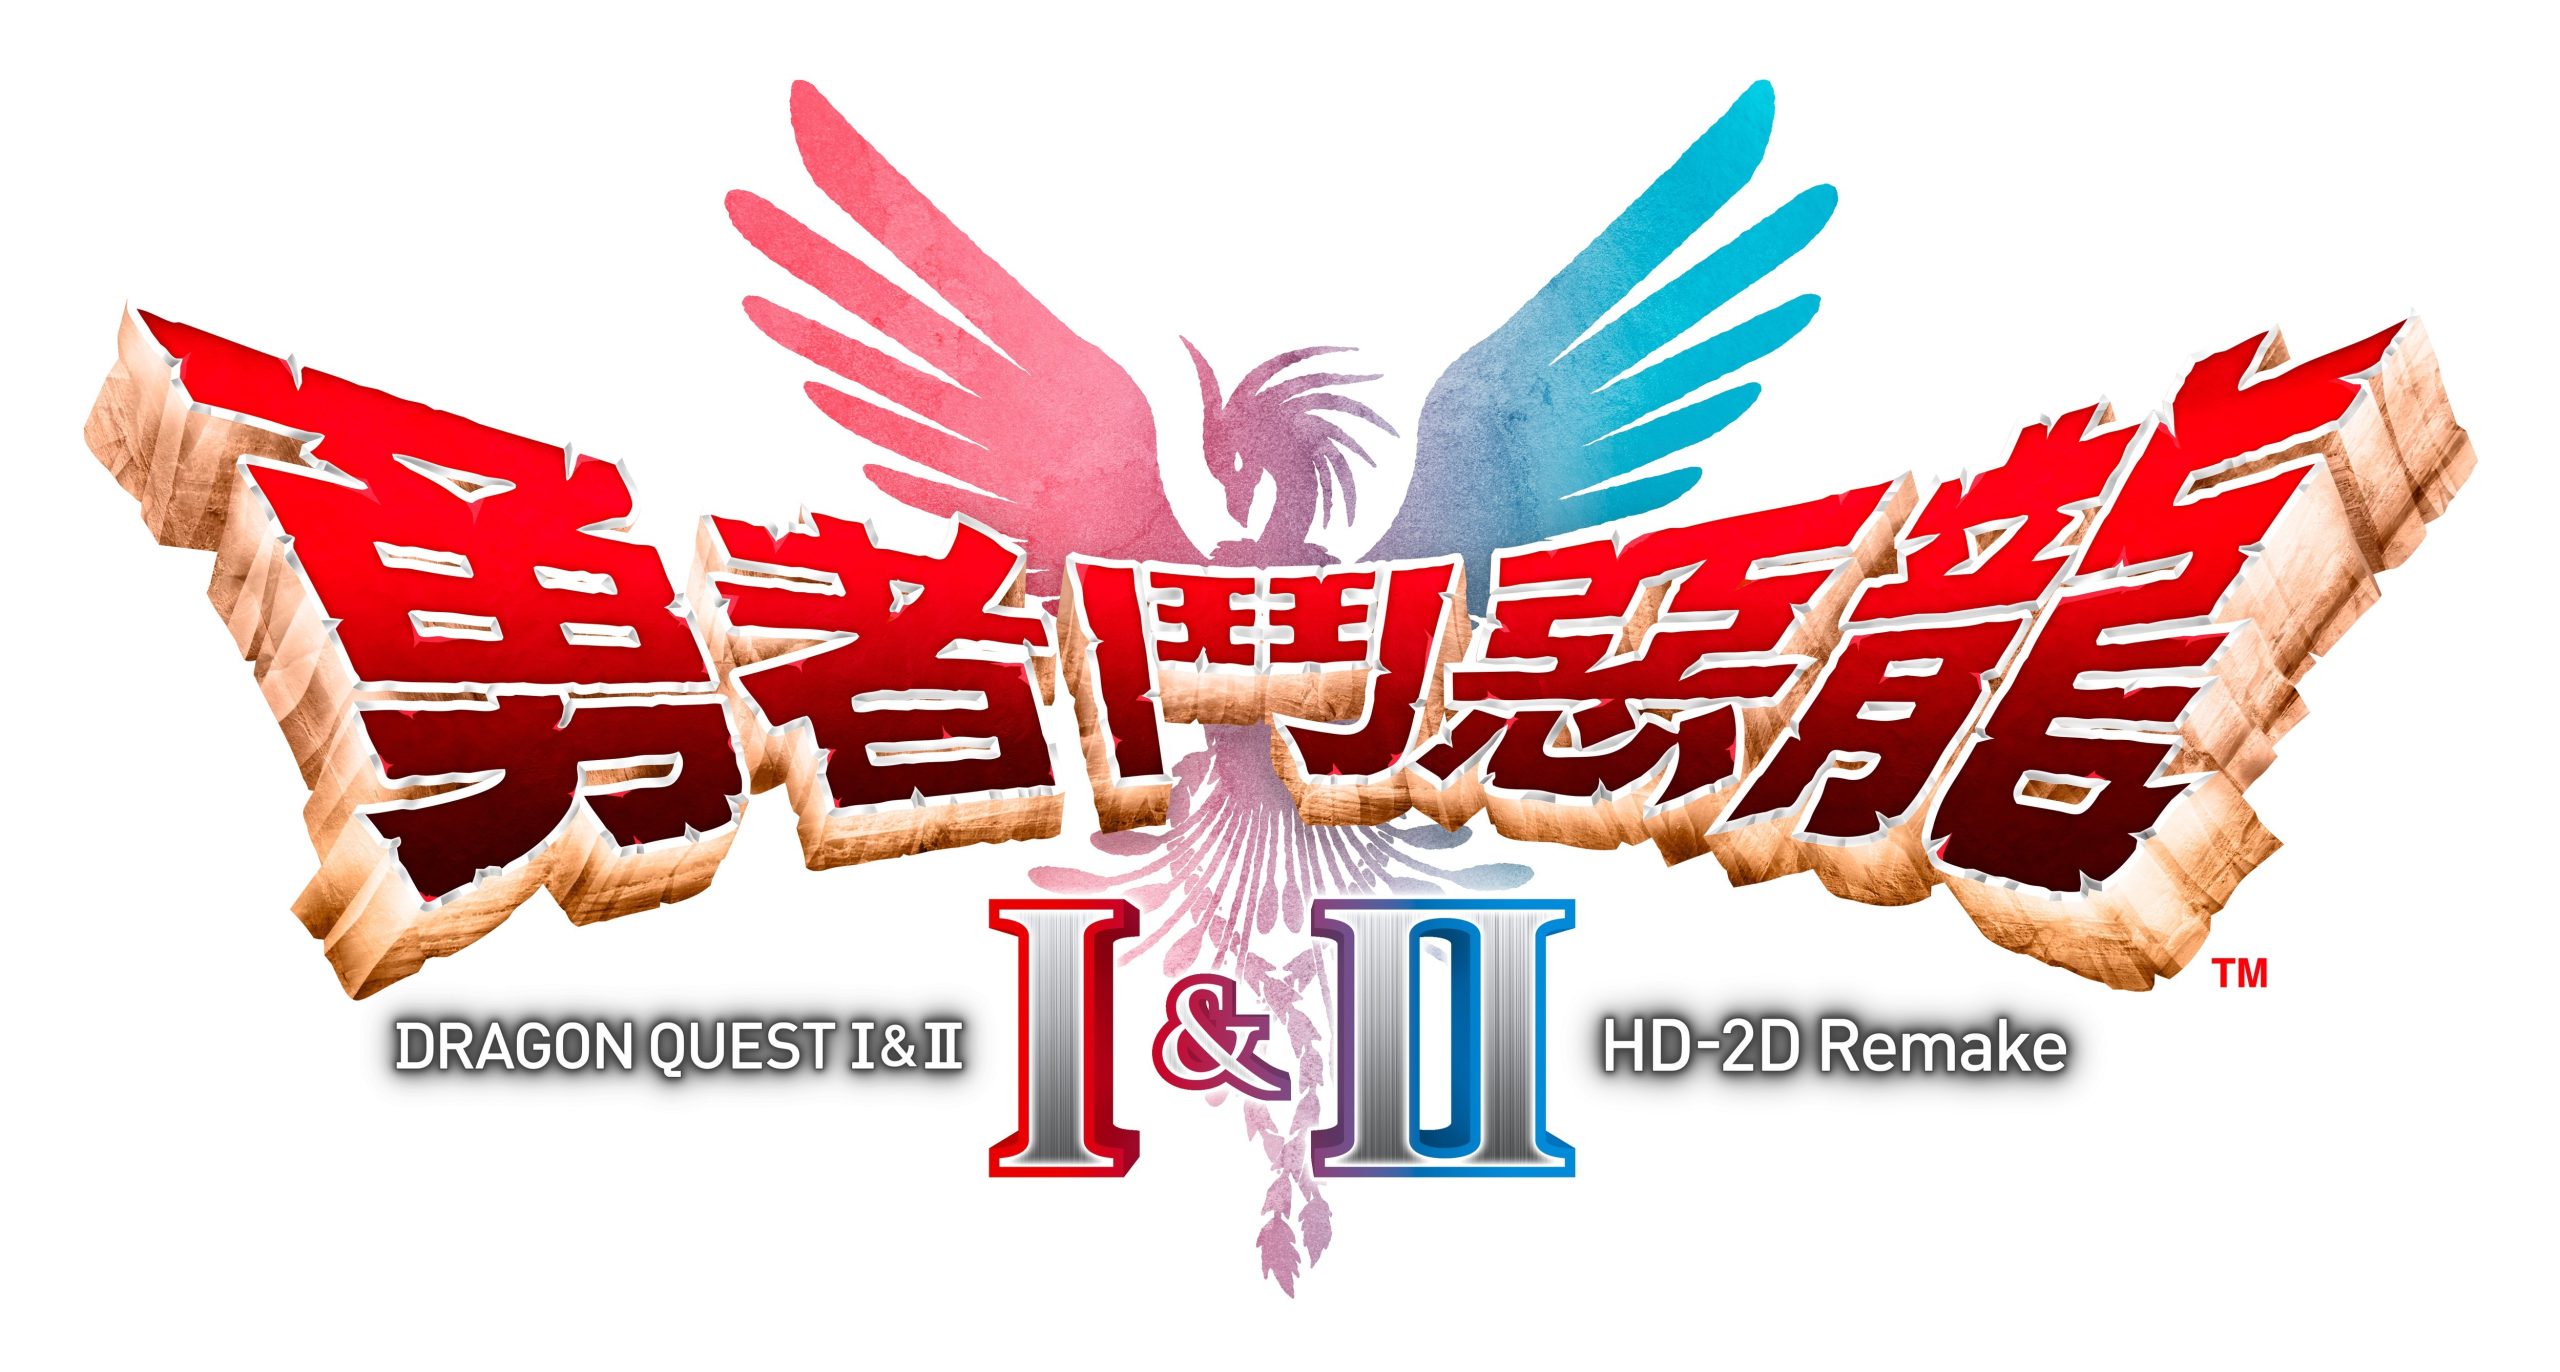 《勇者斗恶龙 3》《勇者斗恶龙 1 & 2》HD-2D 重制版确认将登陆多平台